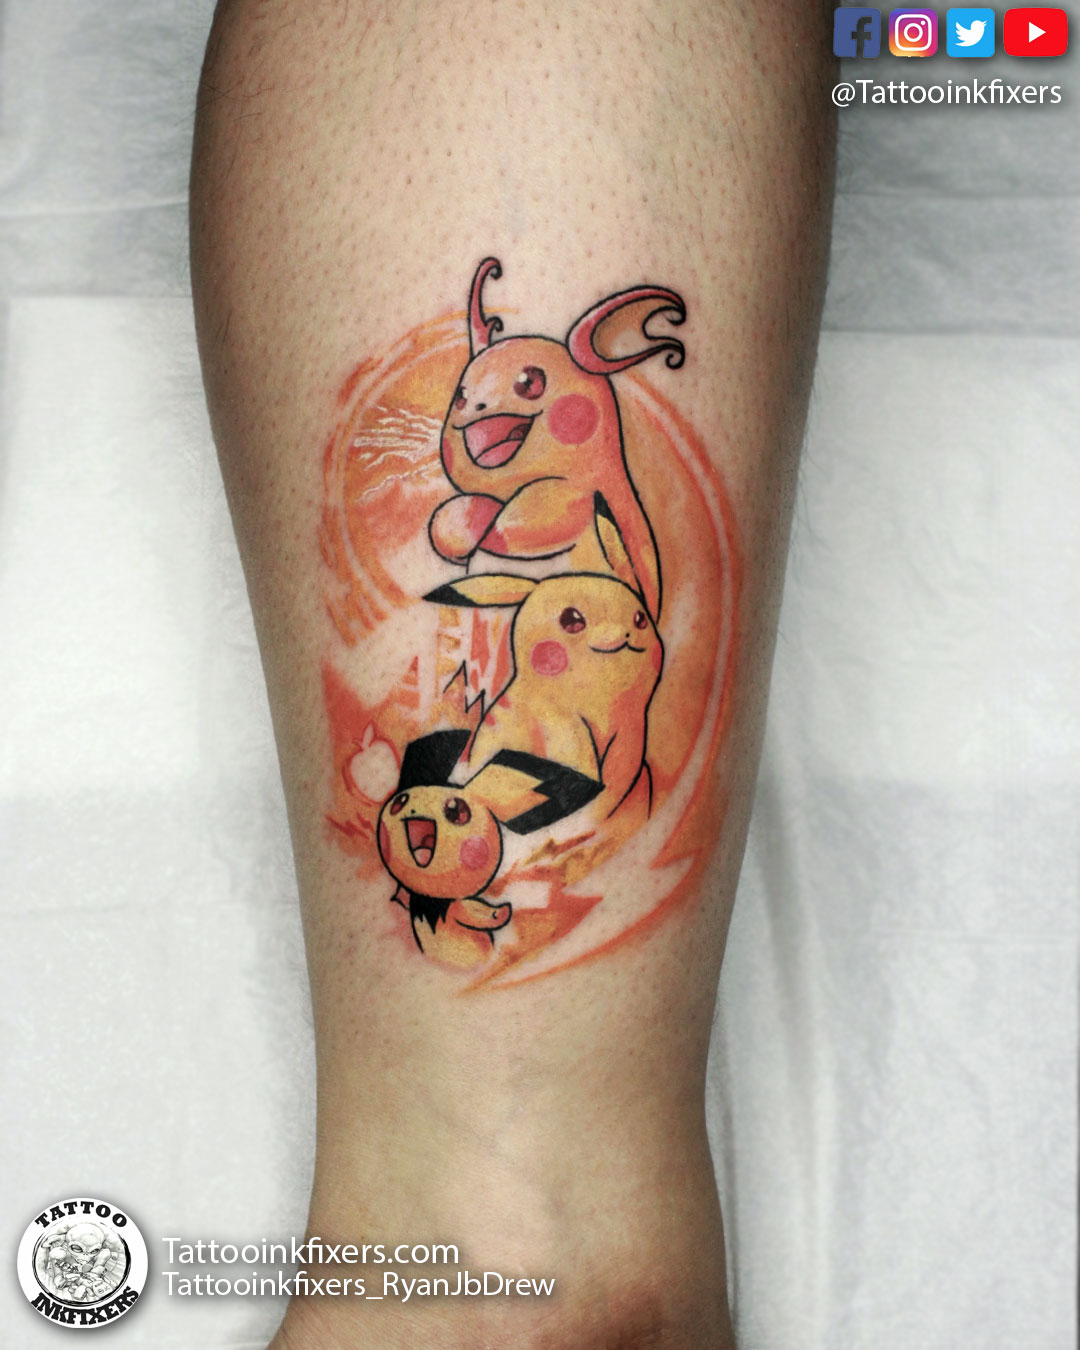 Jessef - Pikachu et ses évolutions, merci à toi d'avoir adopté ce design !  😊🐱 Fait au Avignon Tattoo Show. Si toi aussi t'as un Pokemon favori  fais-moi signe ! 😉 . . . #